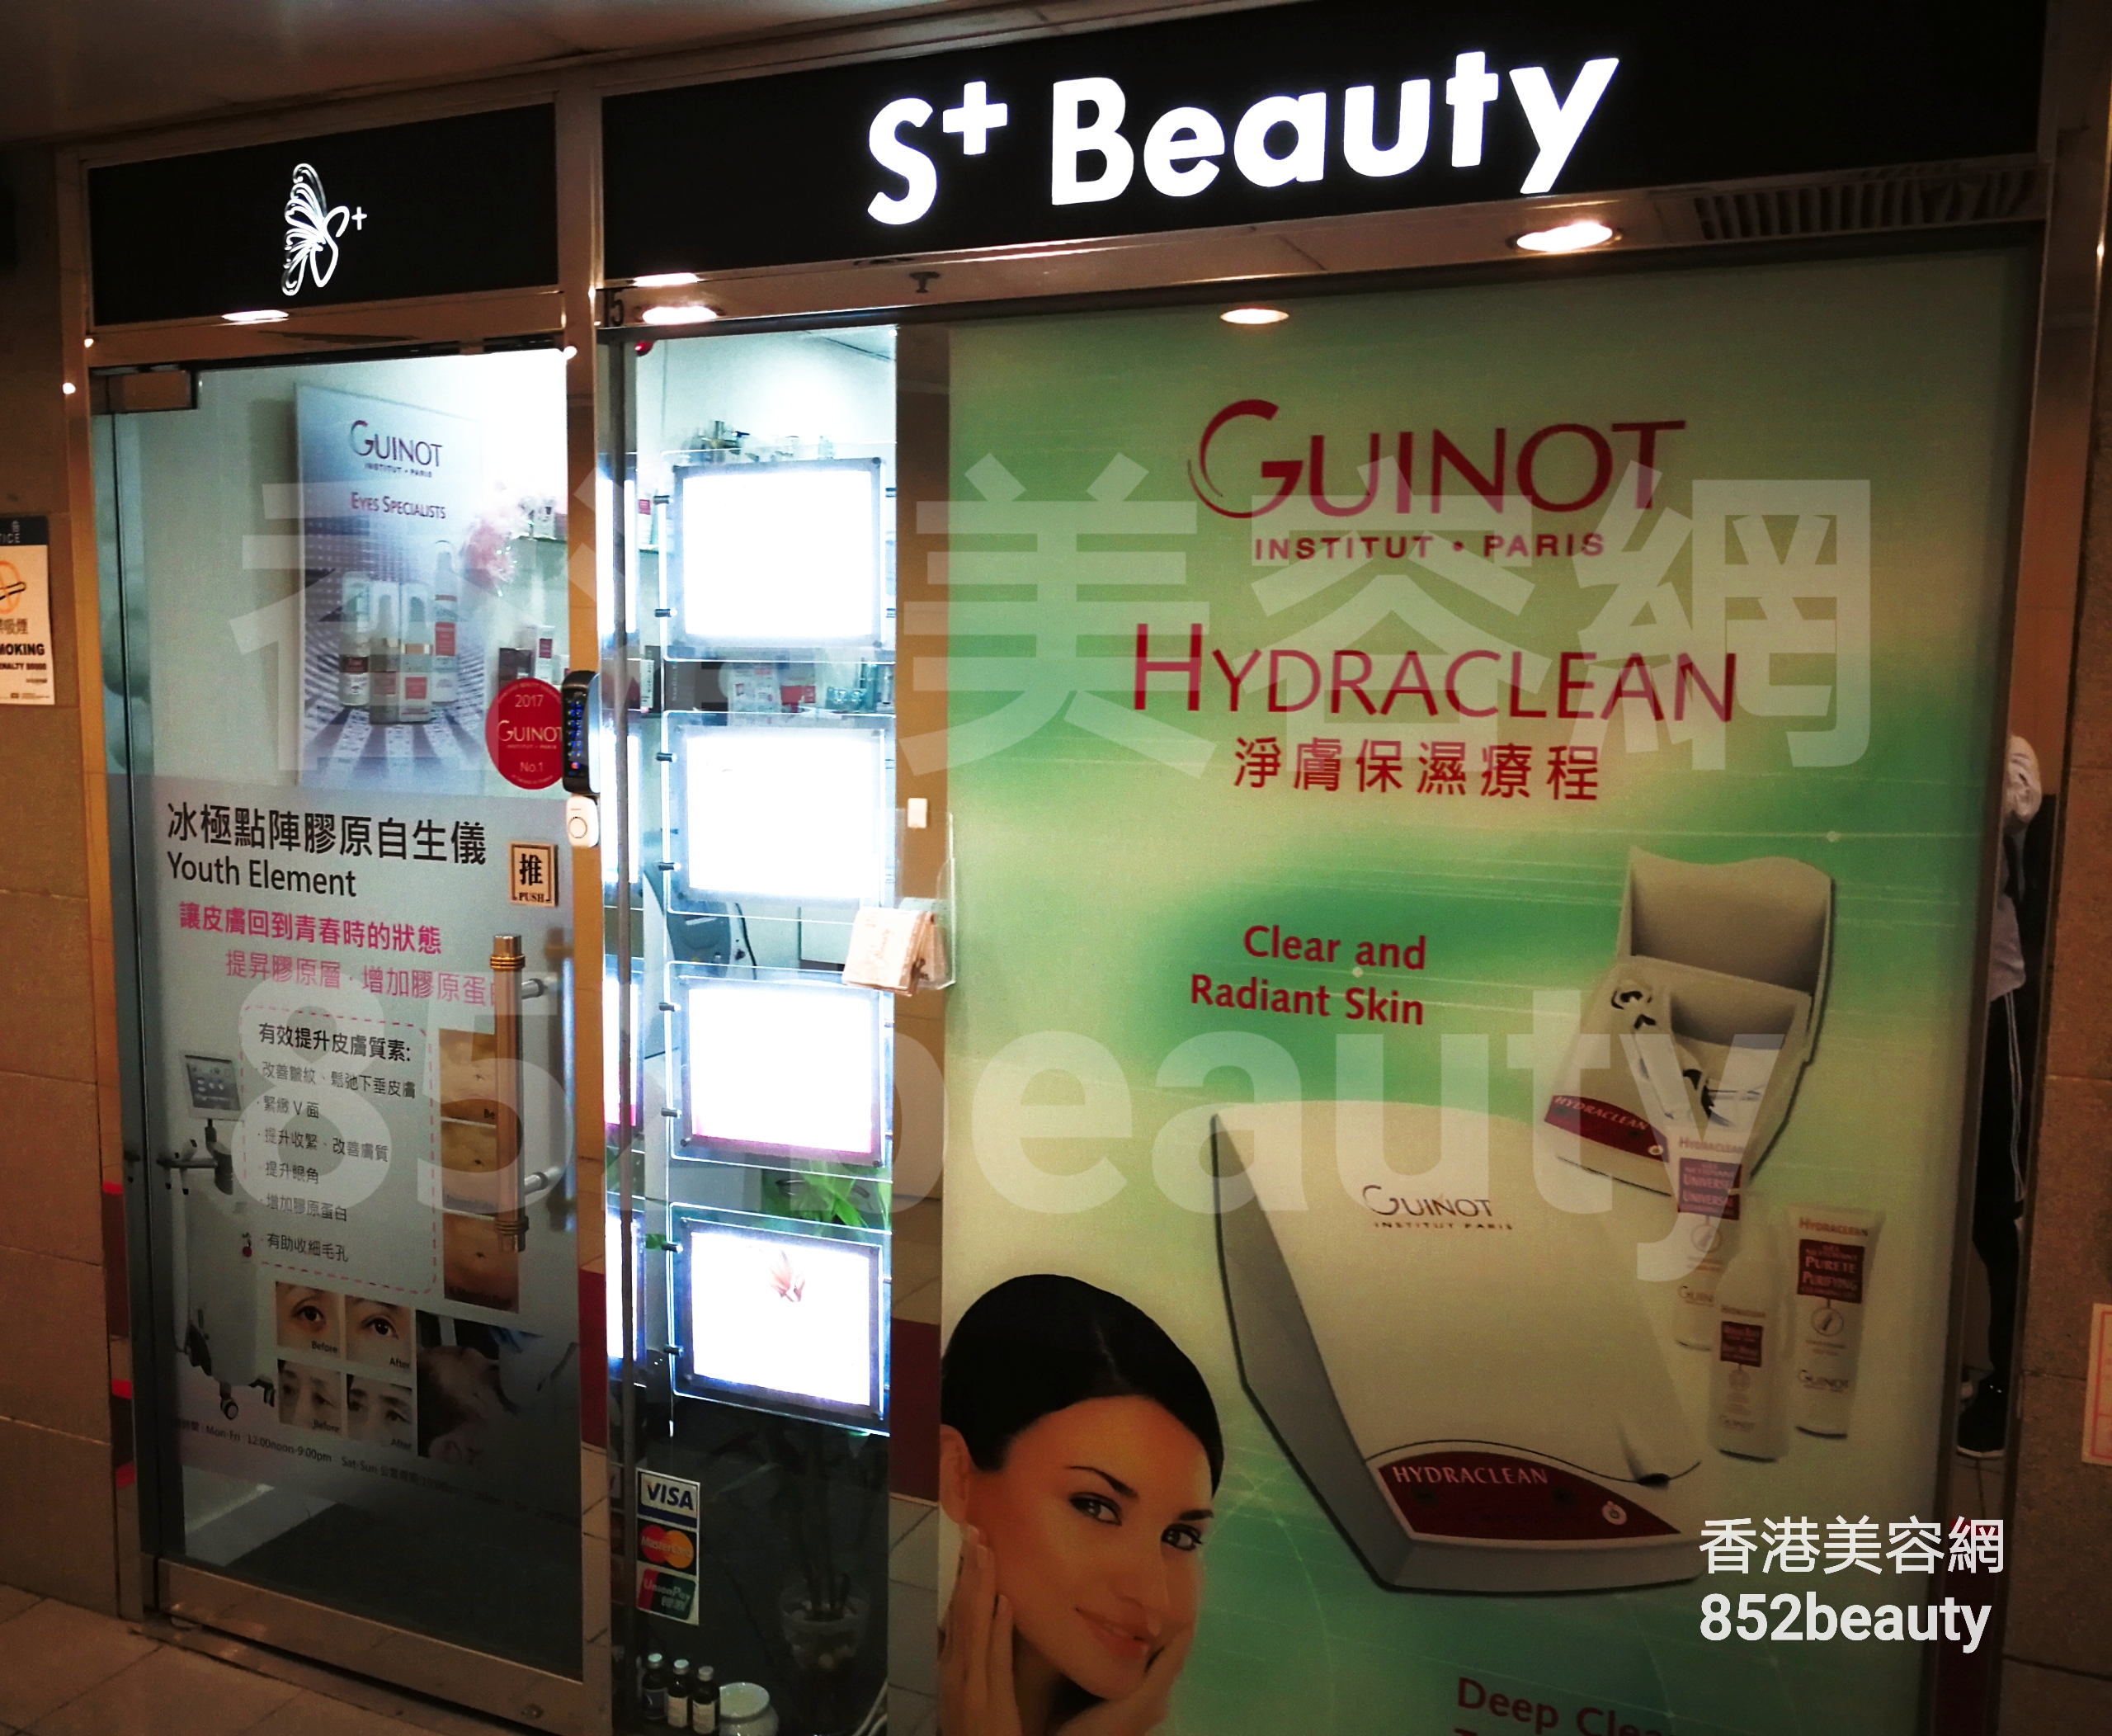 香港美容網 Hong Kong Beauty Salon 美容院 / 美容師: S+ Beauty